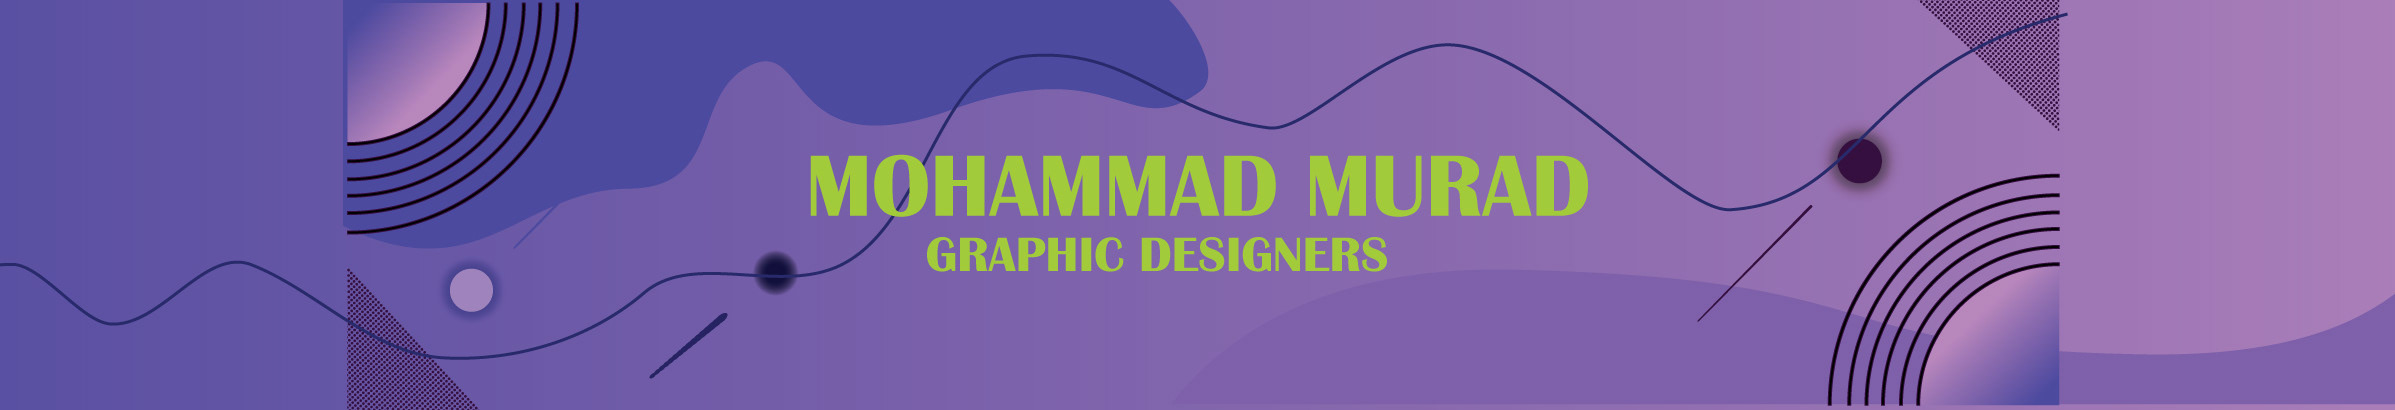 Profil-Banner von Mohammad Murad